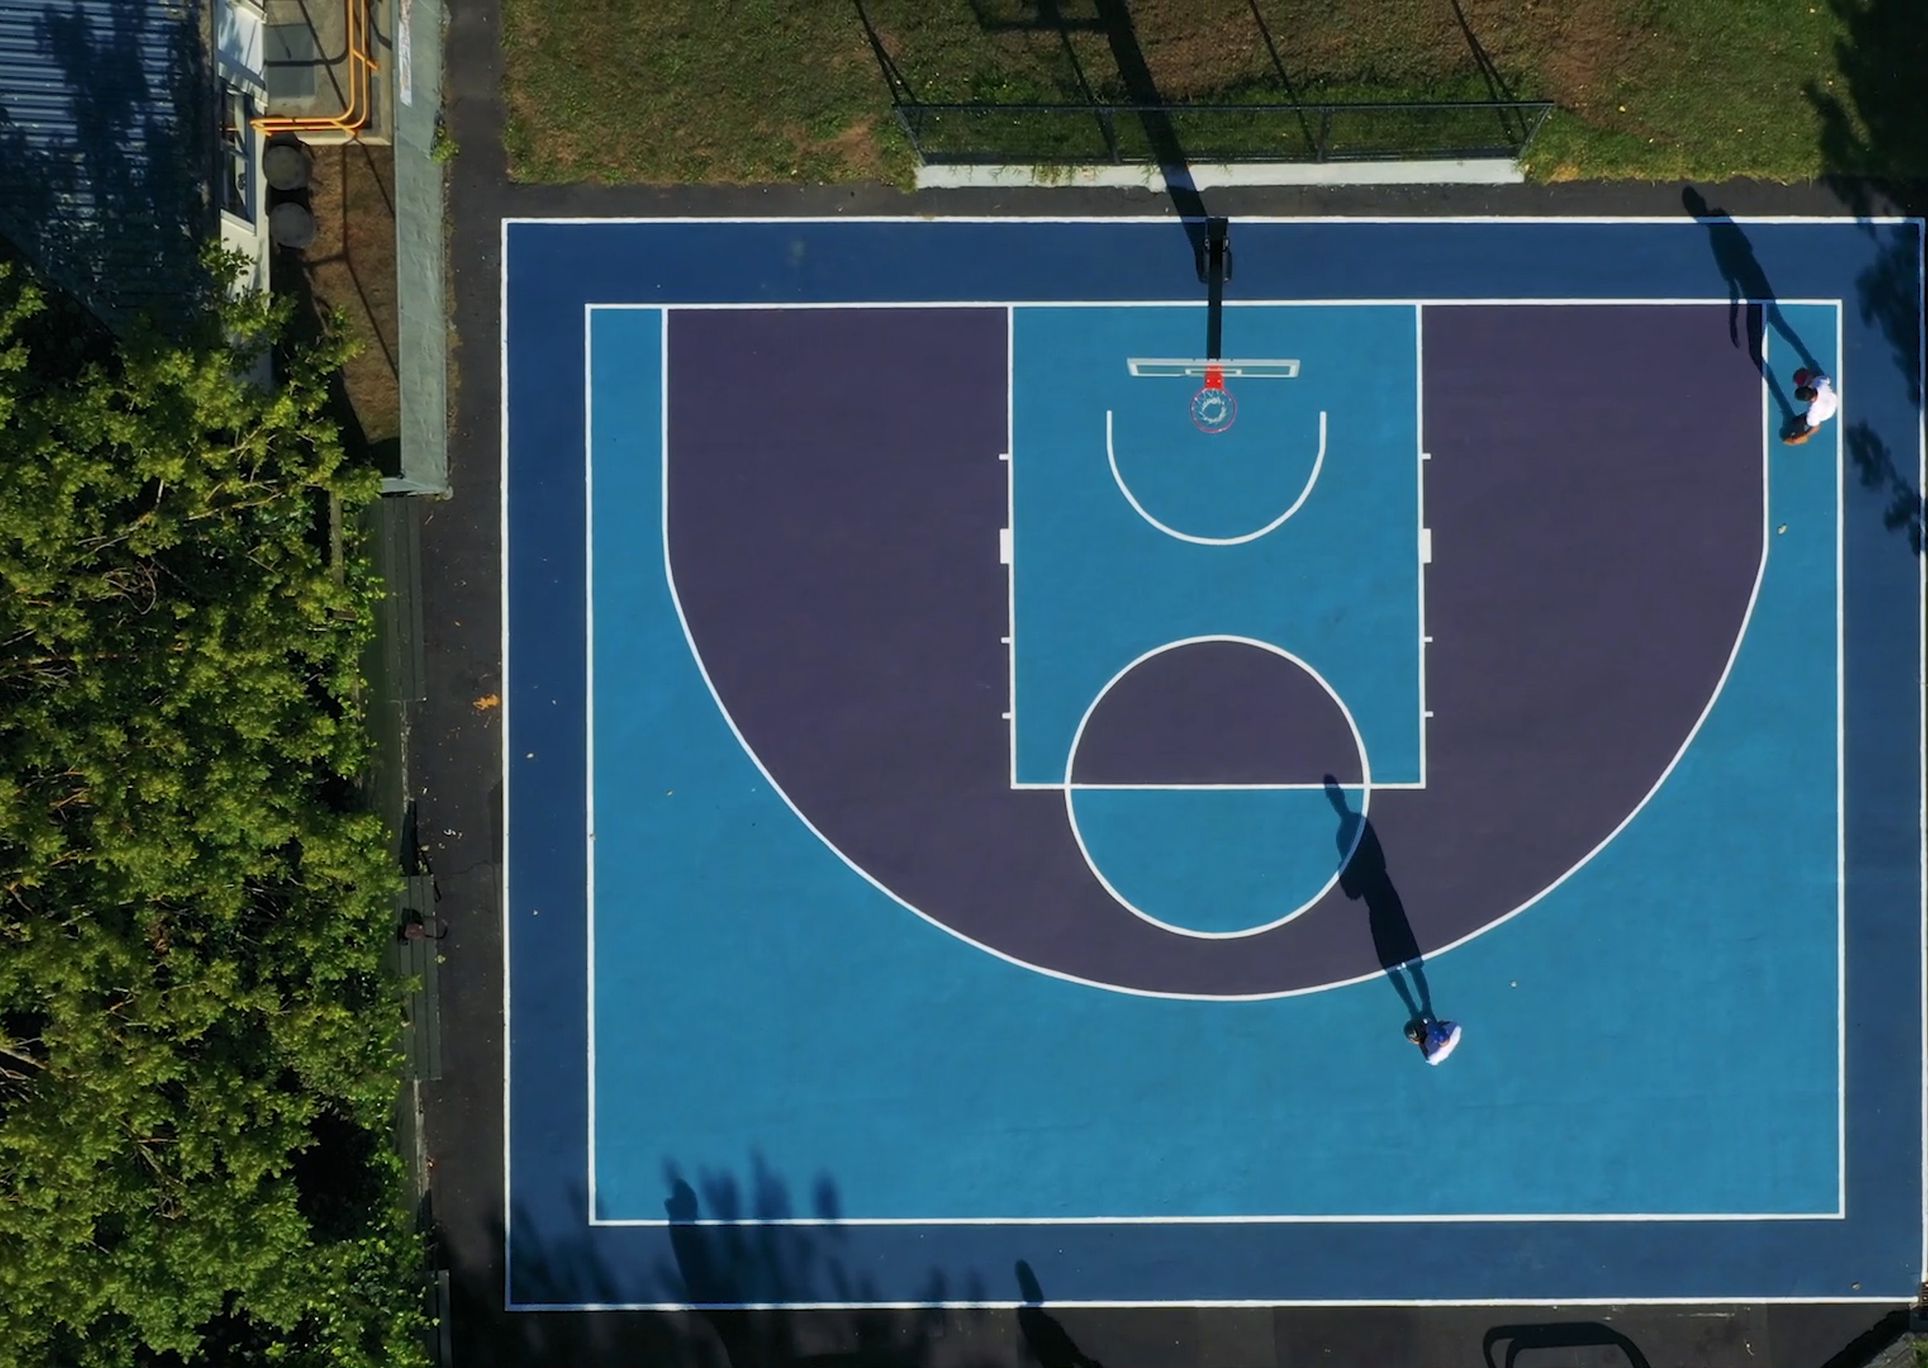 Gribblehurst Basketball Court Park Life